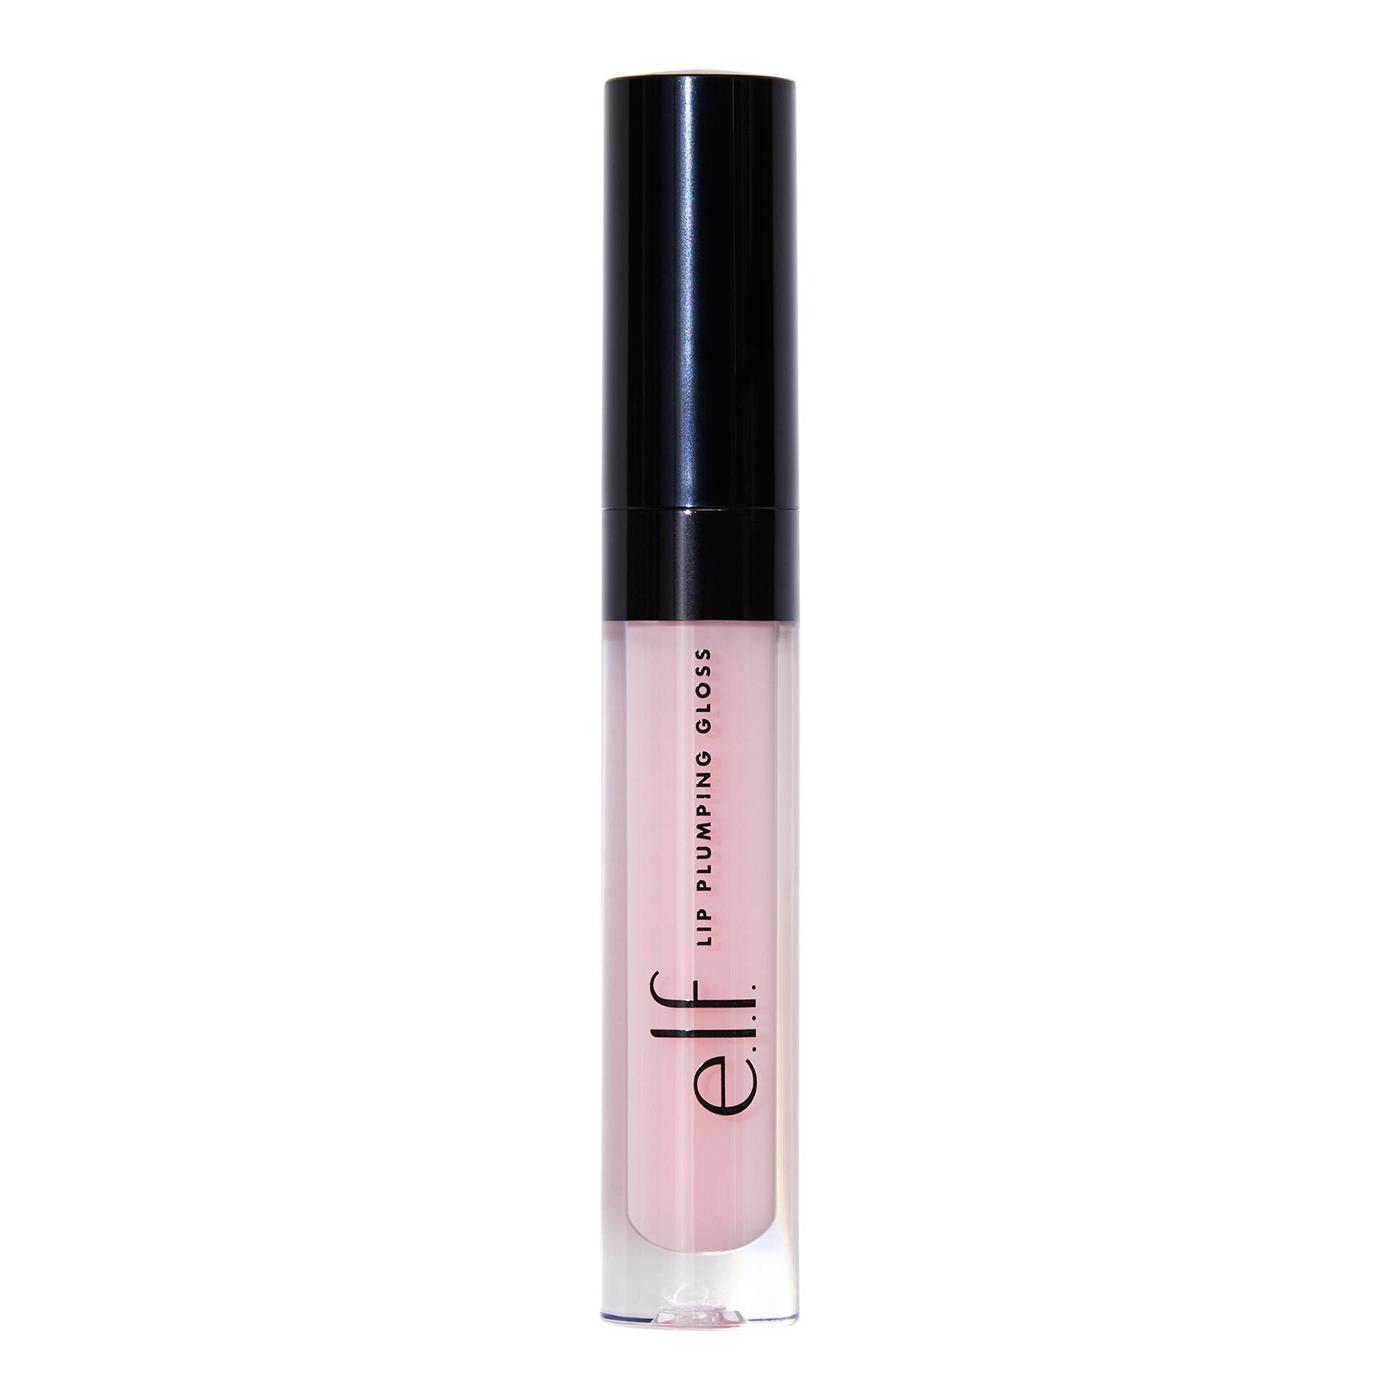 e.l.f. Lip Plumping Gloss - Pink; image 1 of 5